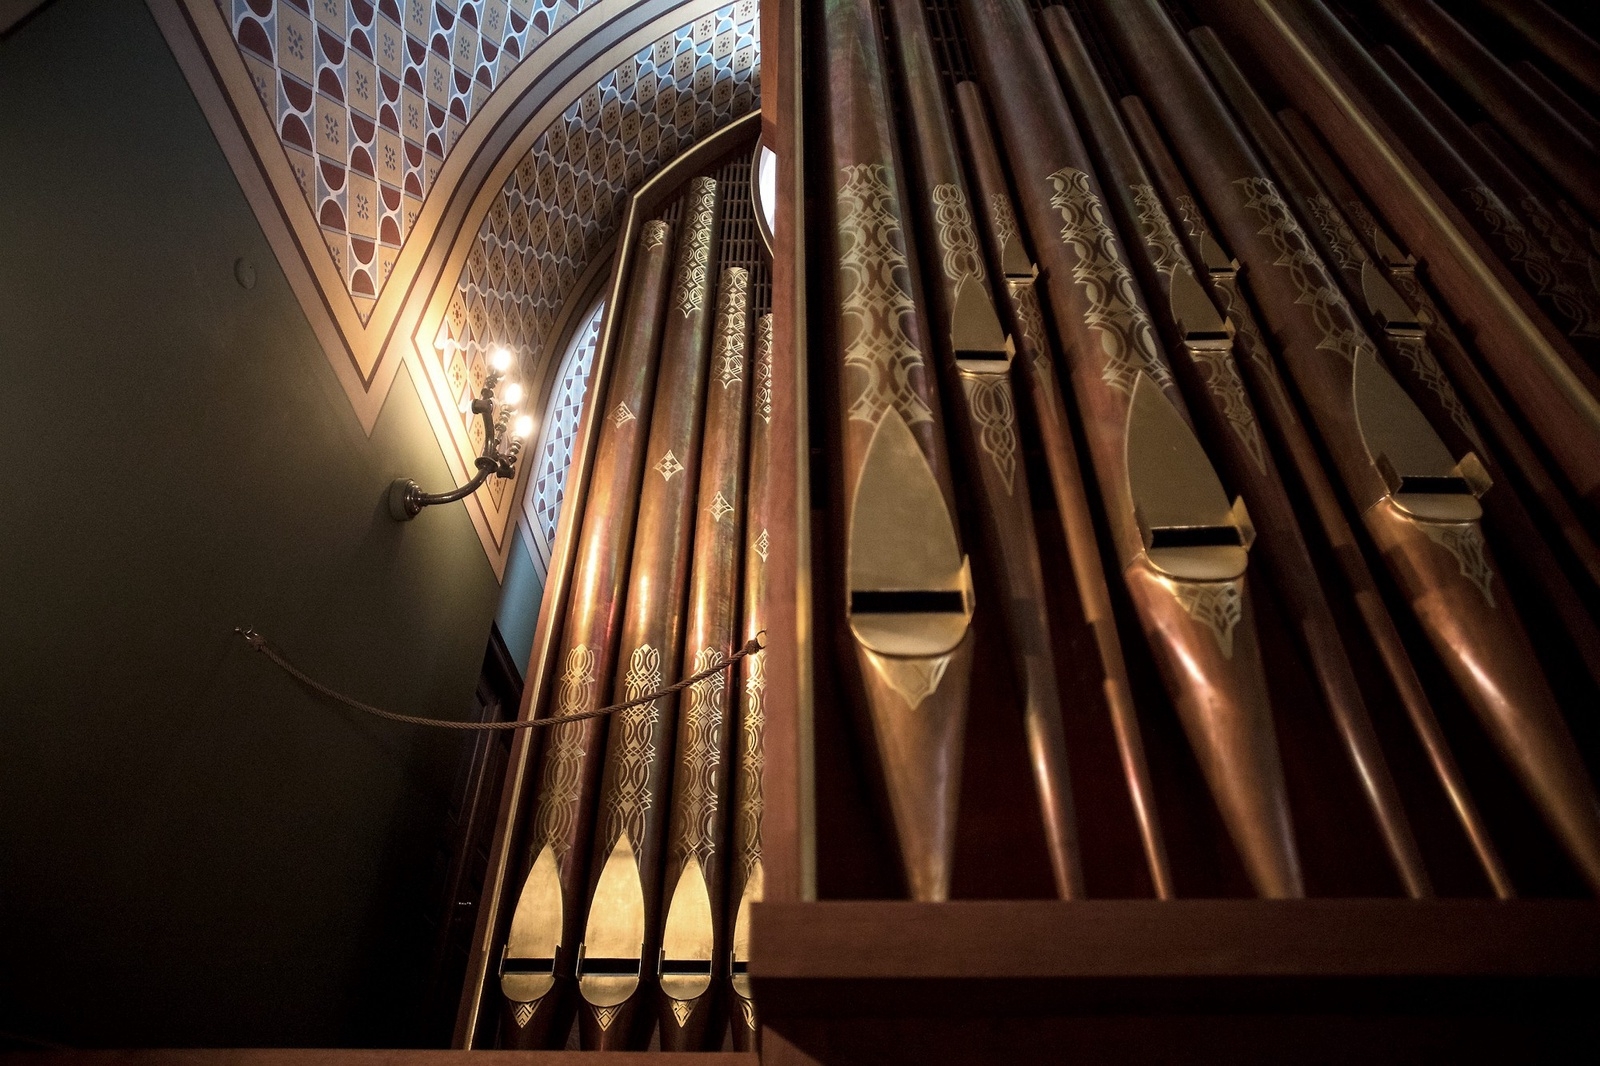 De magnifika orgelpiporna är målade i guld. Foto: Jörgen Johansson